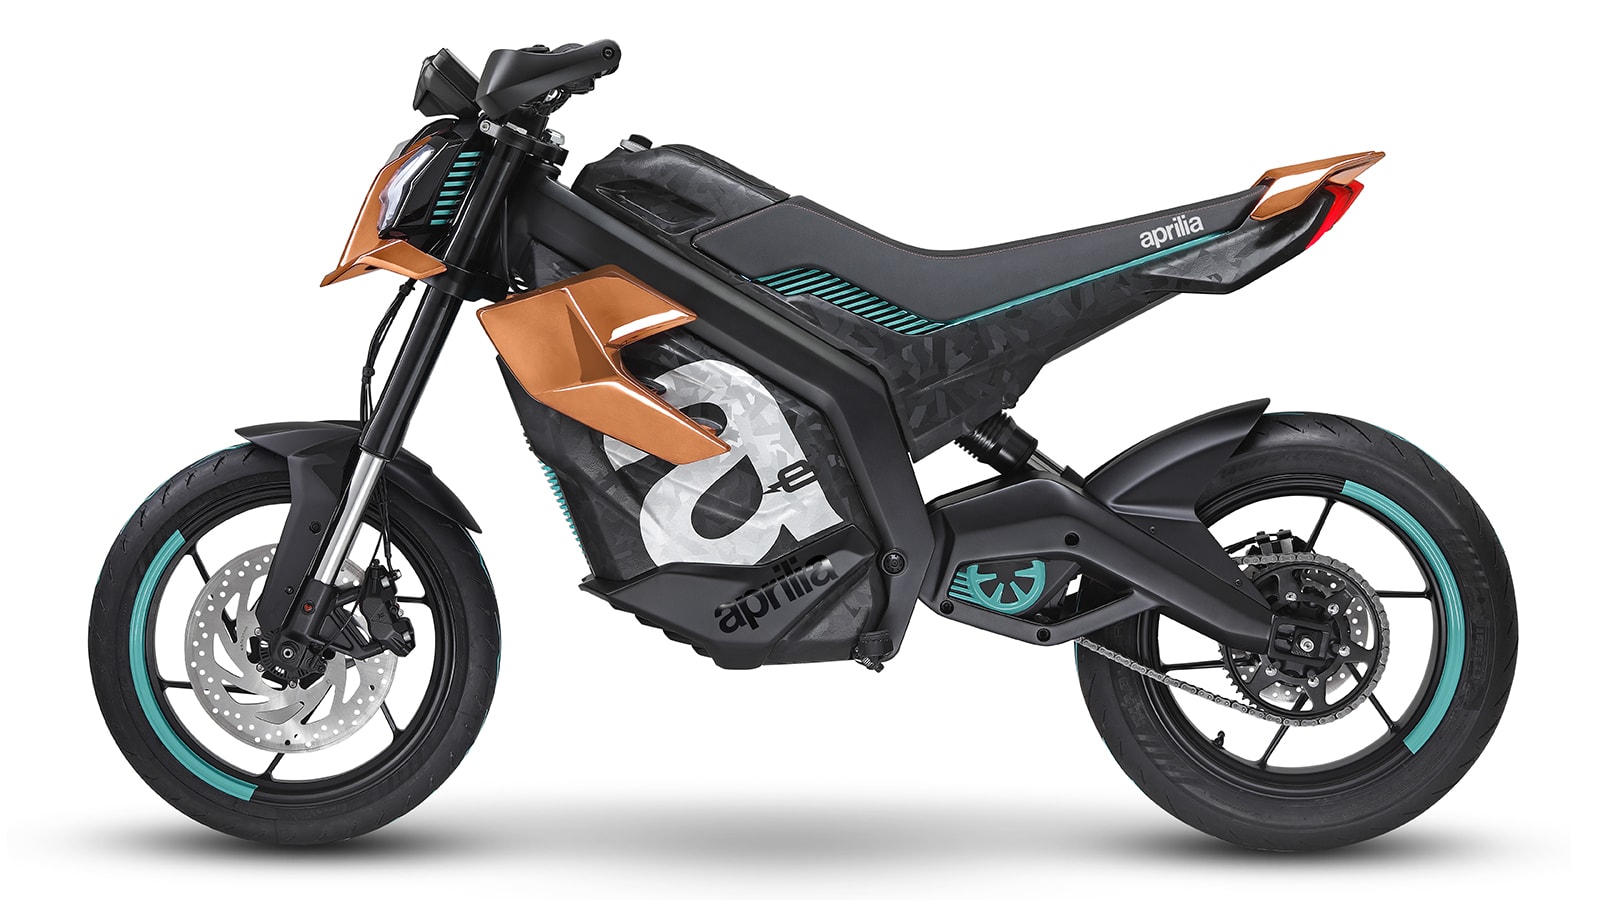 Aprilia Electrica is a fun, budget electric bike concept